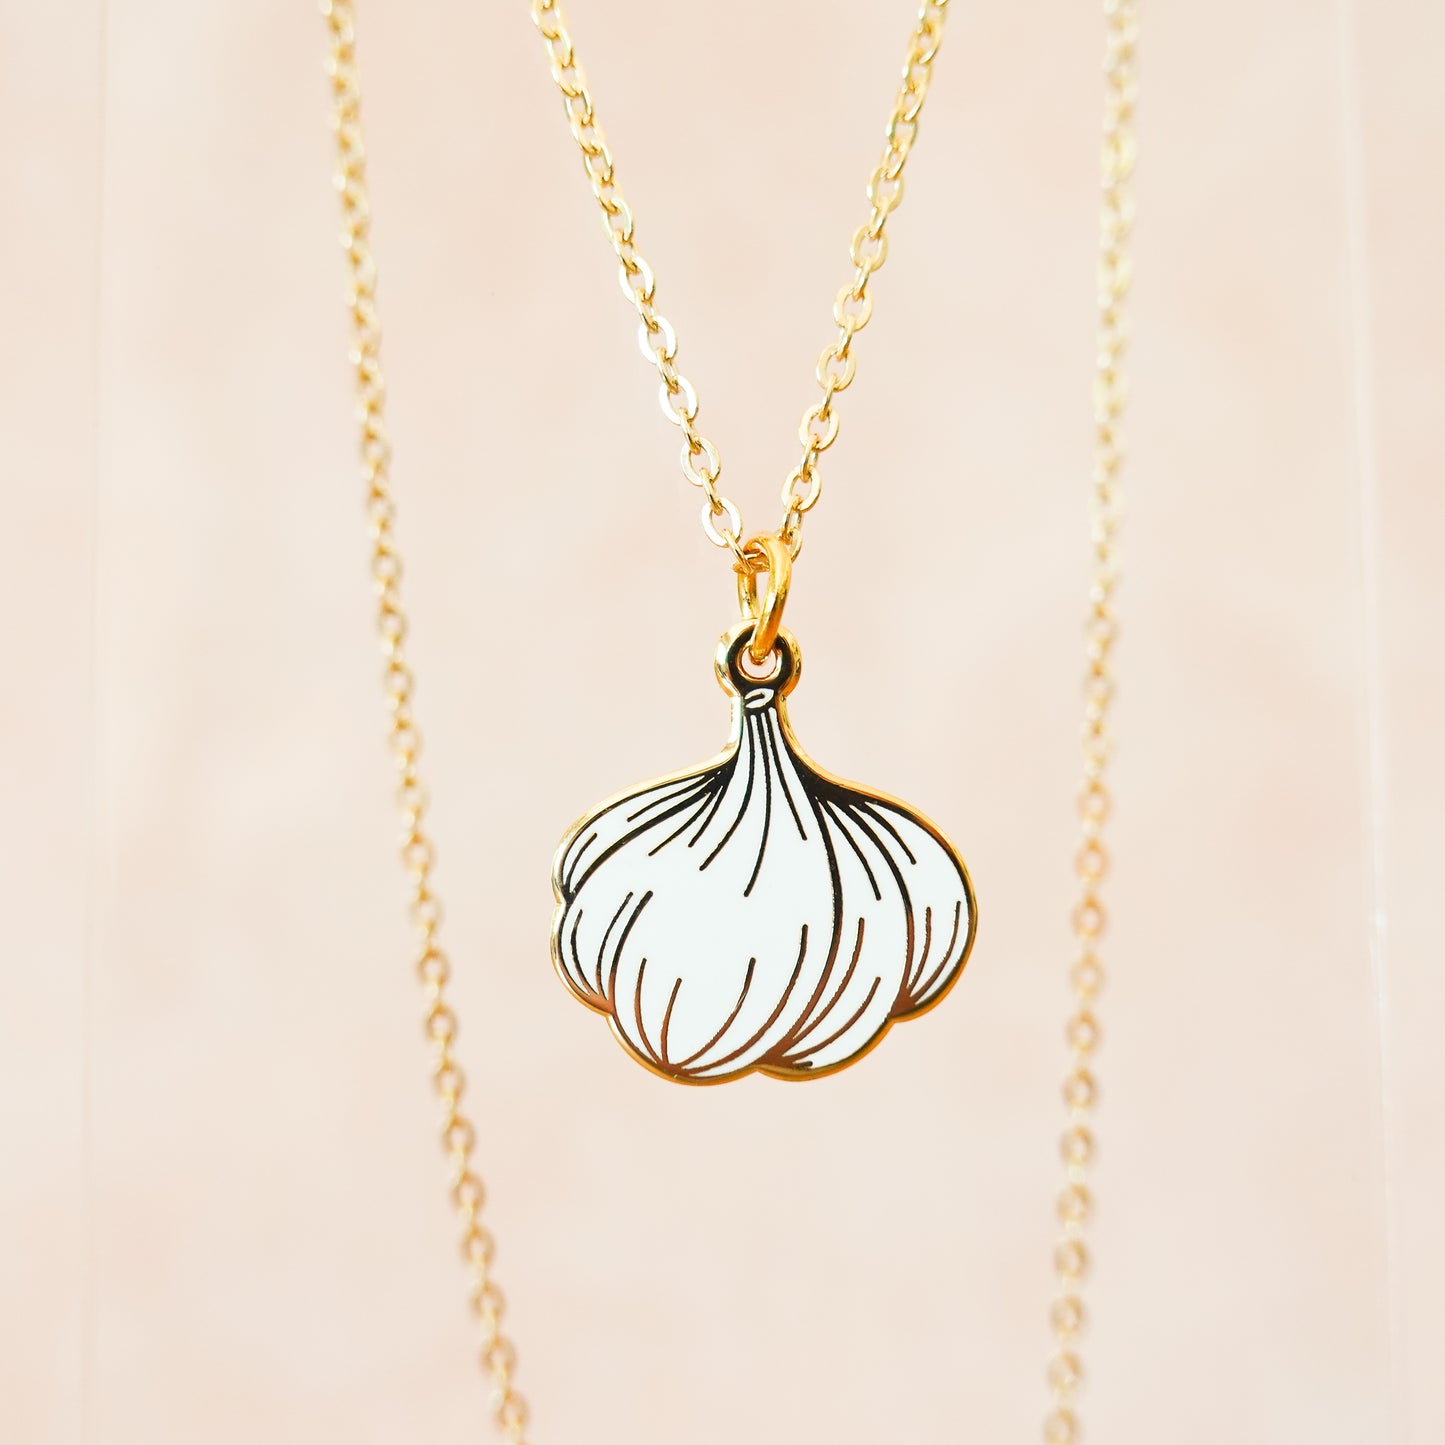 Garlic necklace